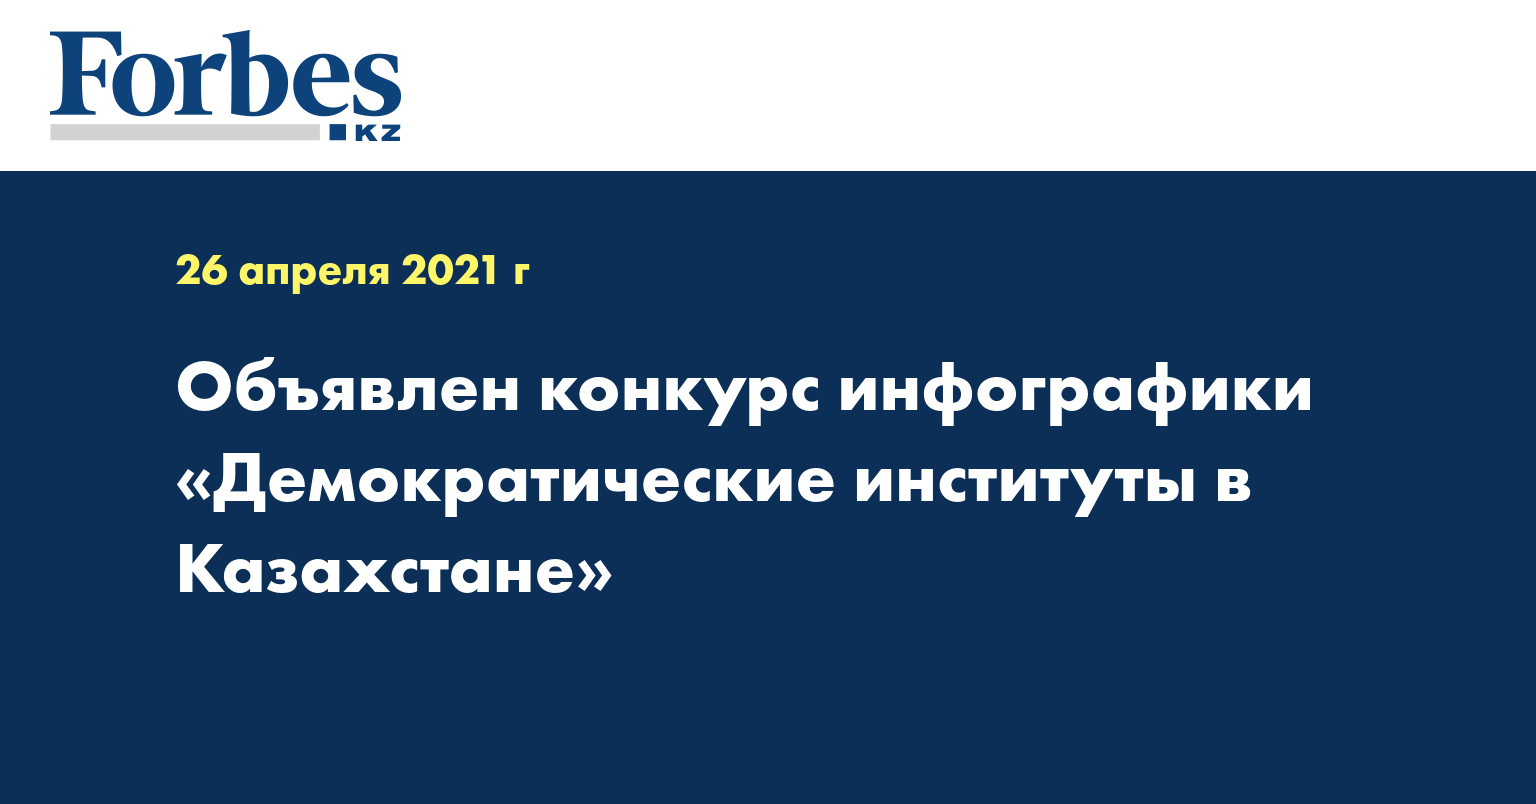 Объявлен конкурс инфографик «Демократические институты в Казахстане»